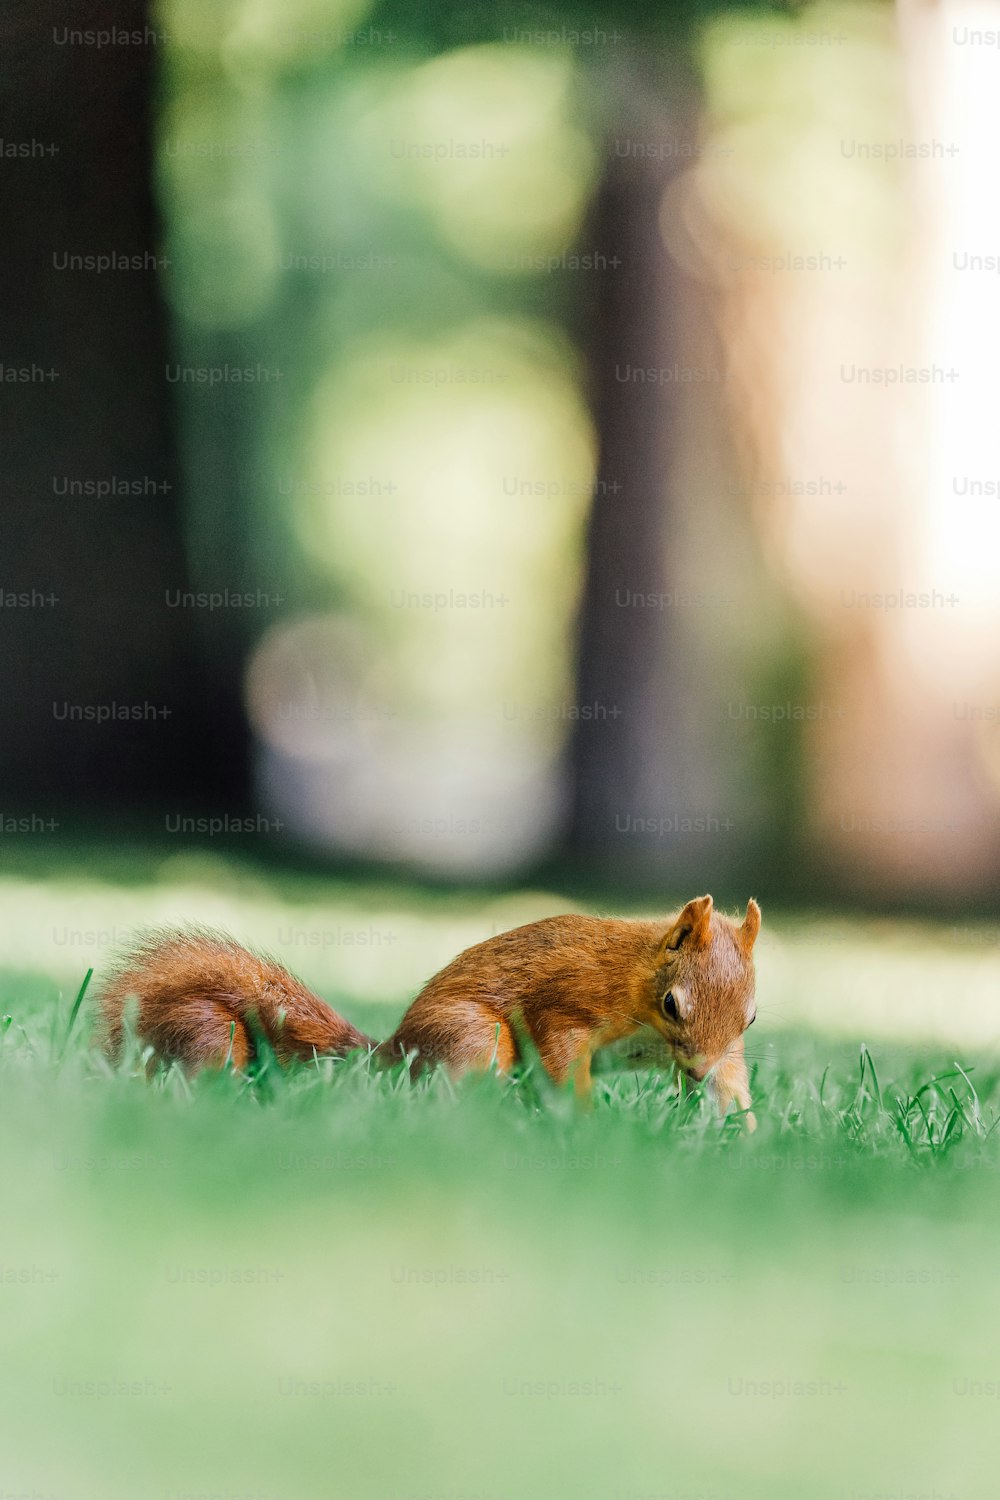 무성한 녹색 들판 위에 앉아있는 작은 다람쥐